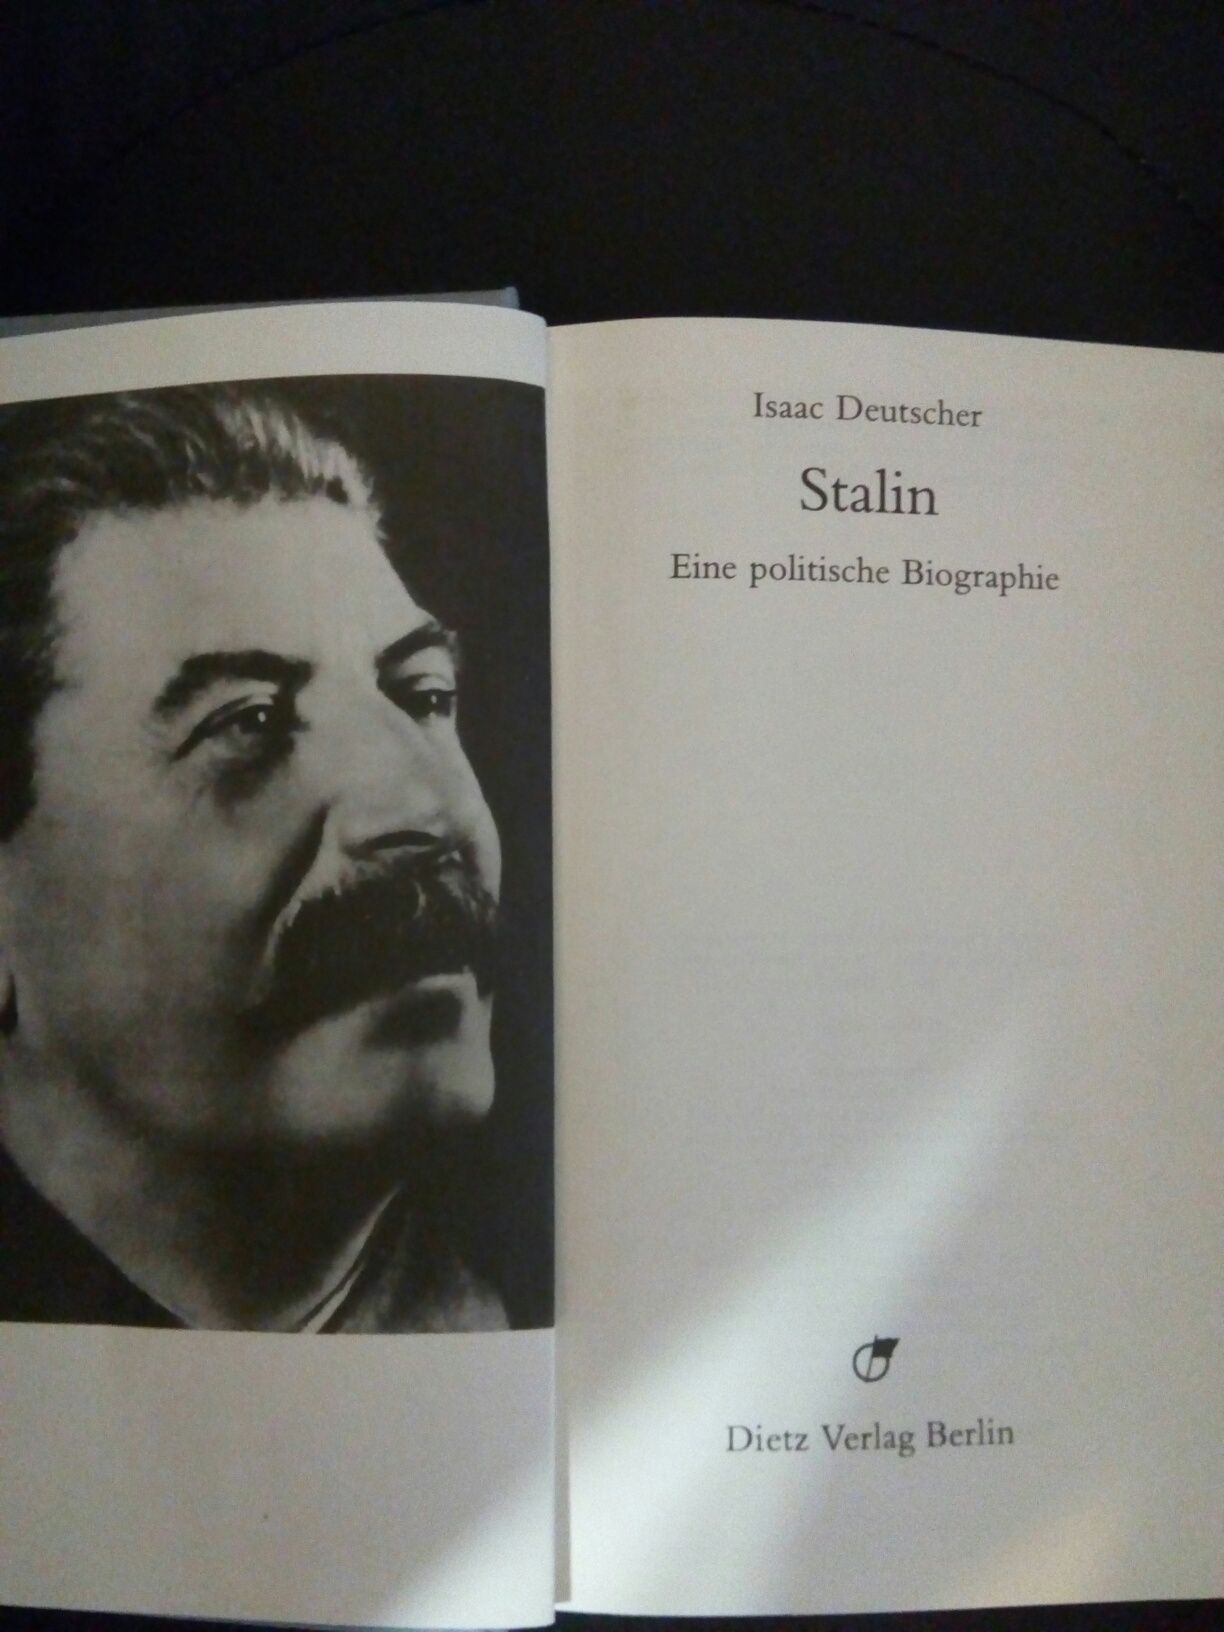 Книга о Сталине